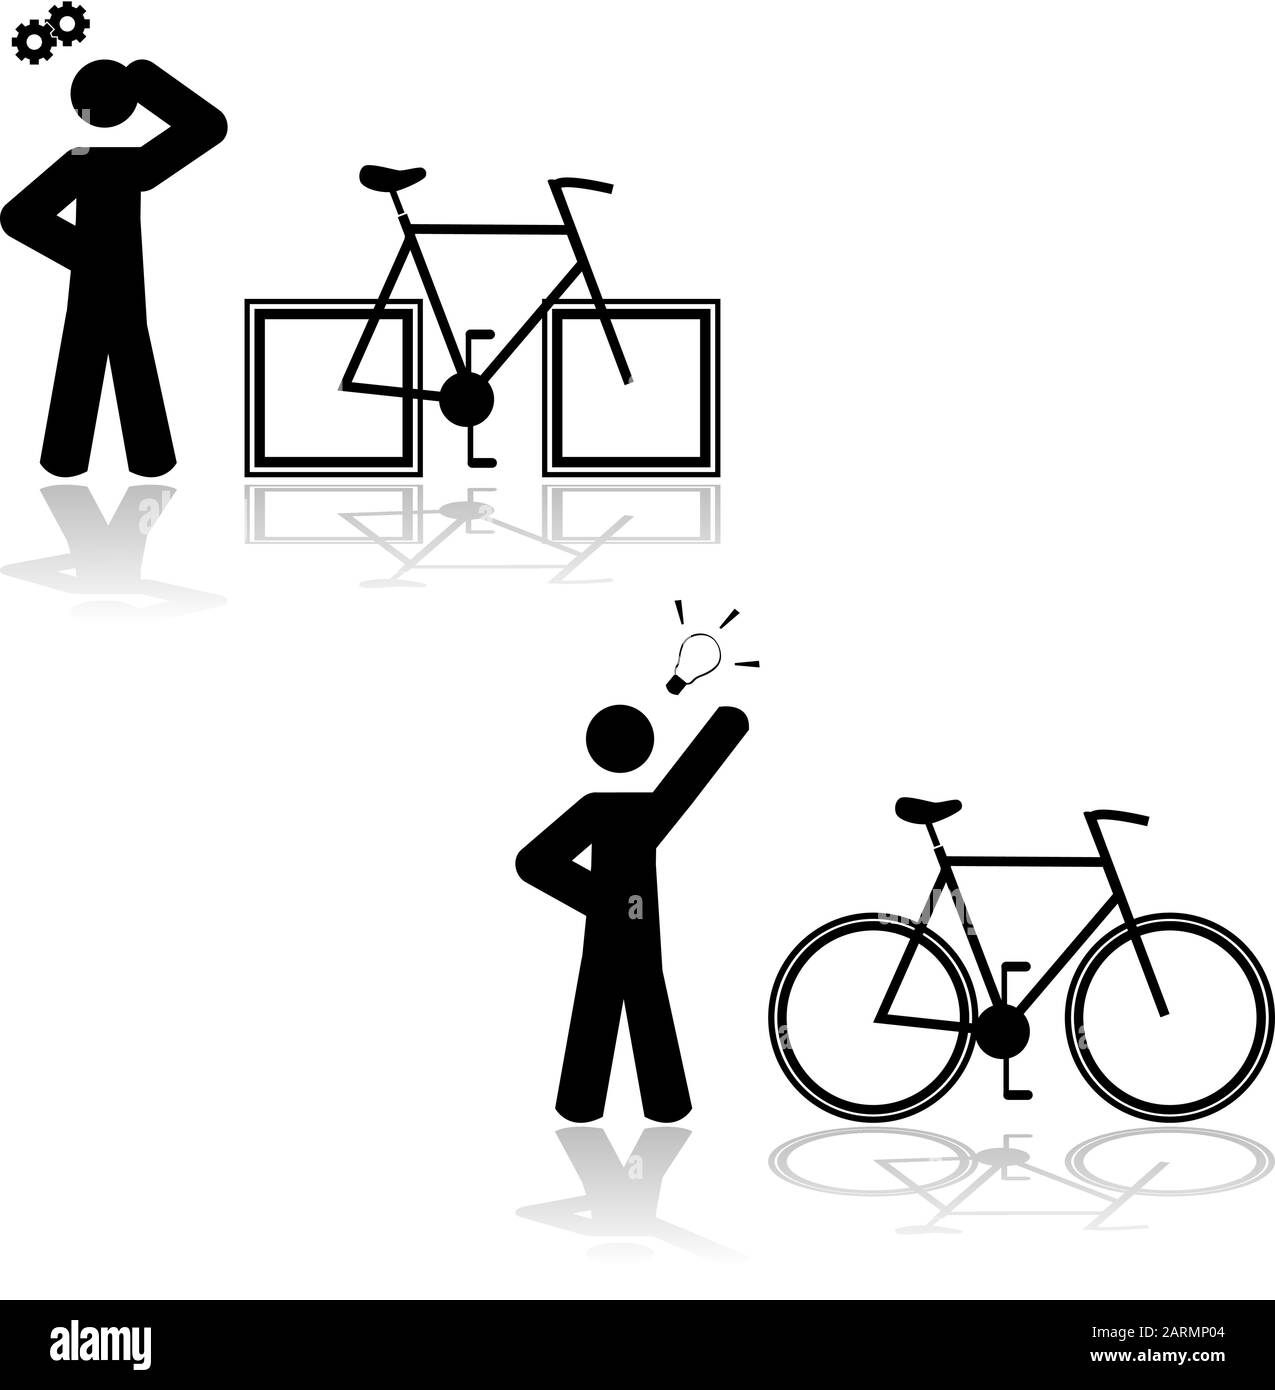 Konzeptdarstellung, bei der jemand ein Problem mit einem Fahrrad hat, das Vierkanträder hat, und dann herauszufinden, dass es mit runden Rädern gelöst ist Stock Vektor